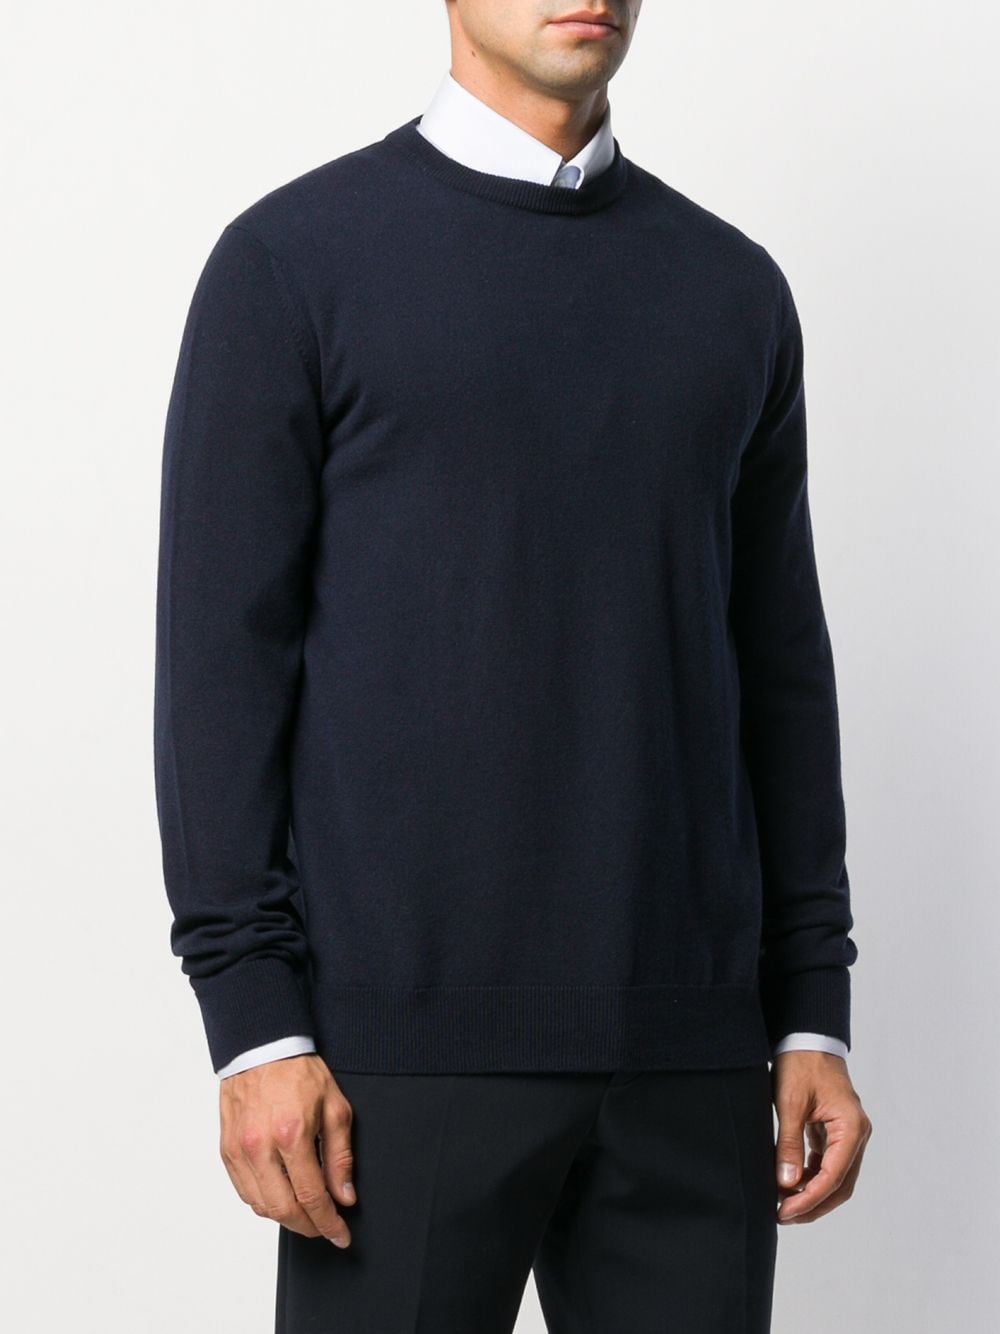 фото Giorgio armani свитер тонкой вязки с круглым вырезом